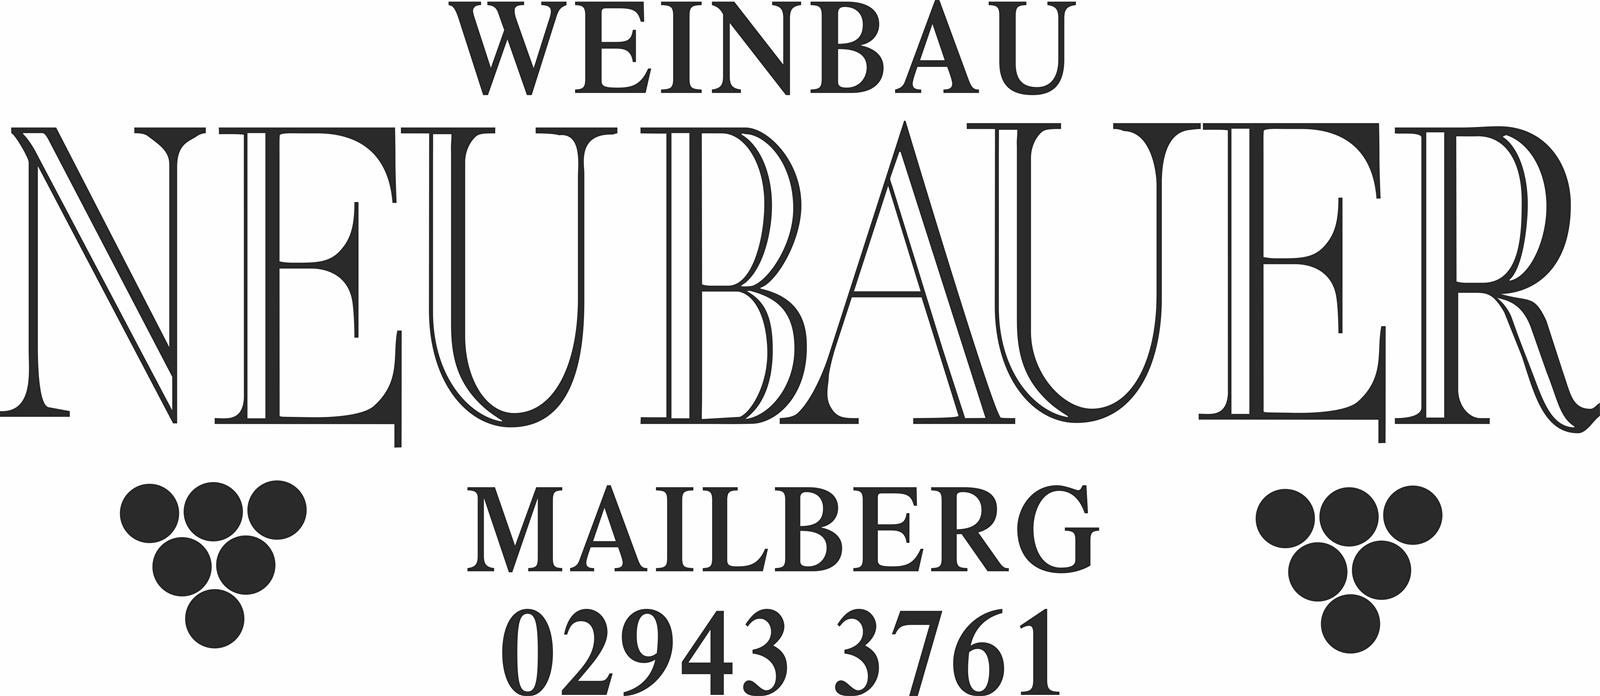 Weinbrunnen
Weinbau Neubauer